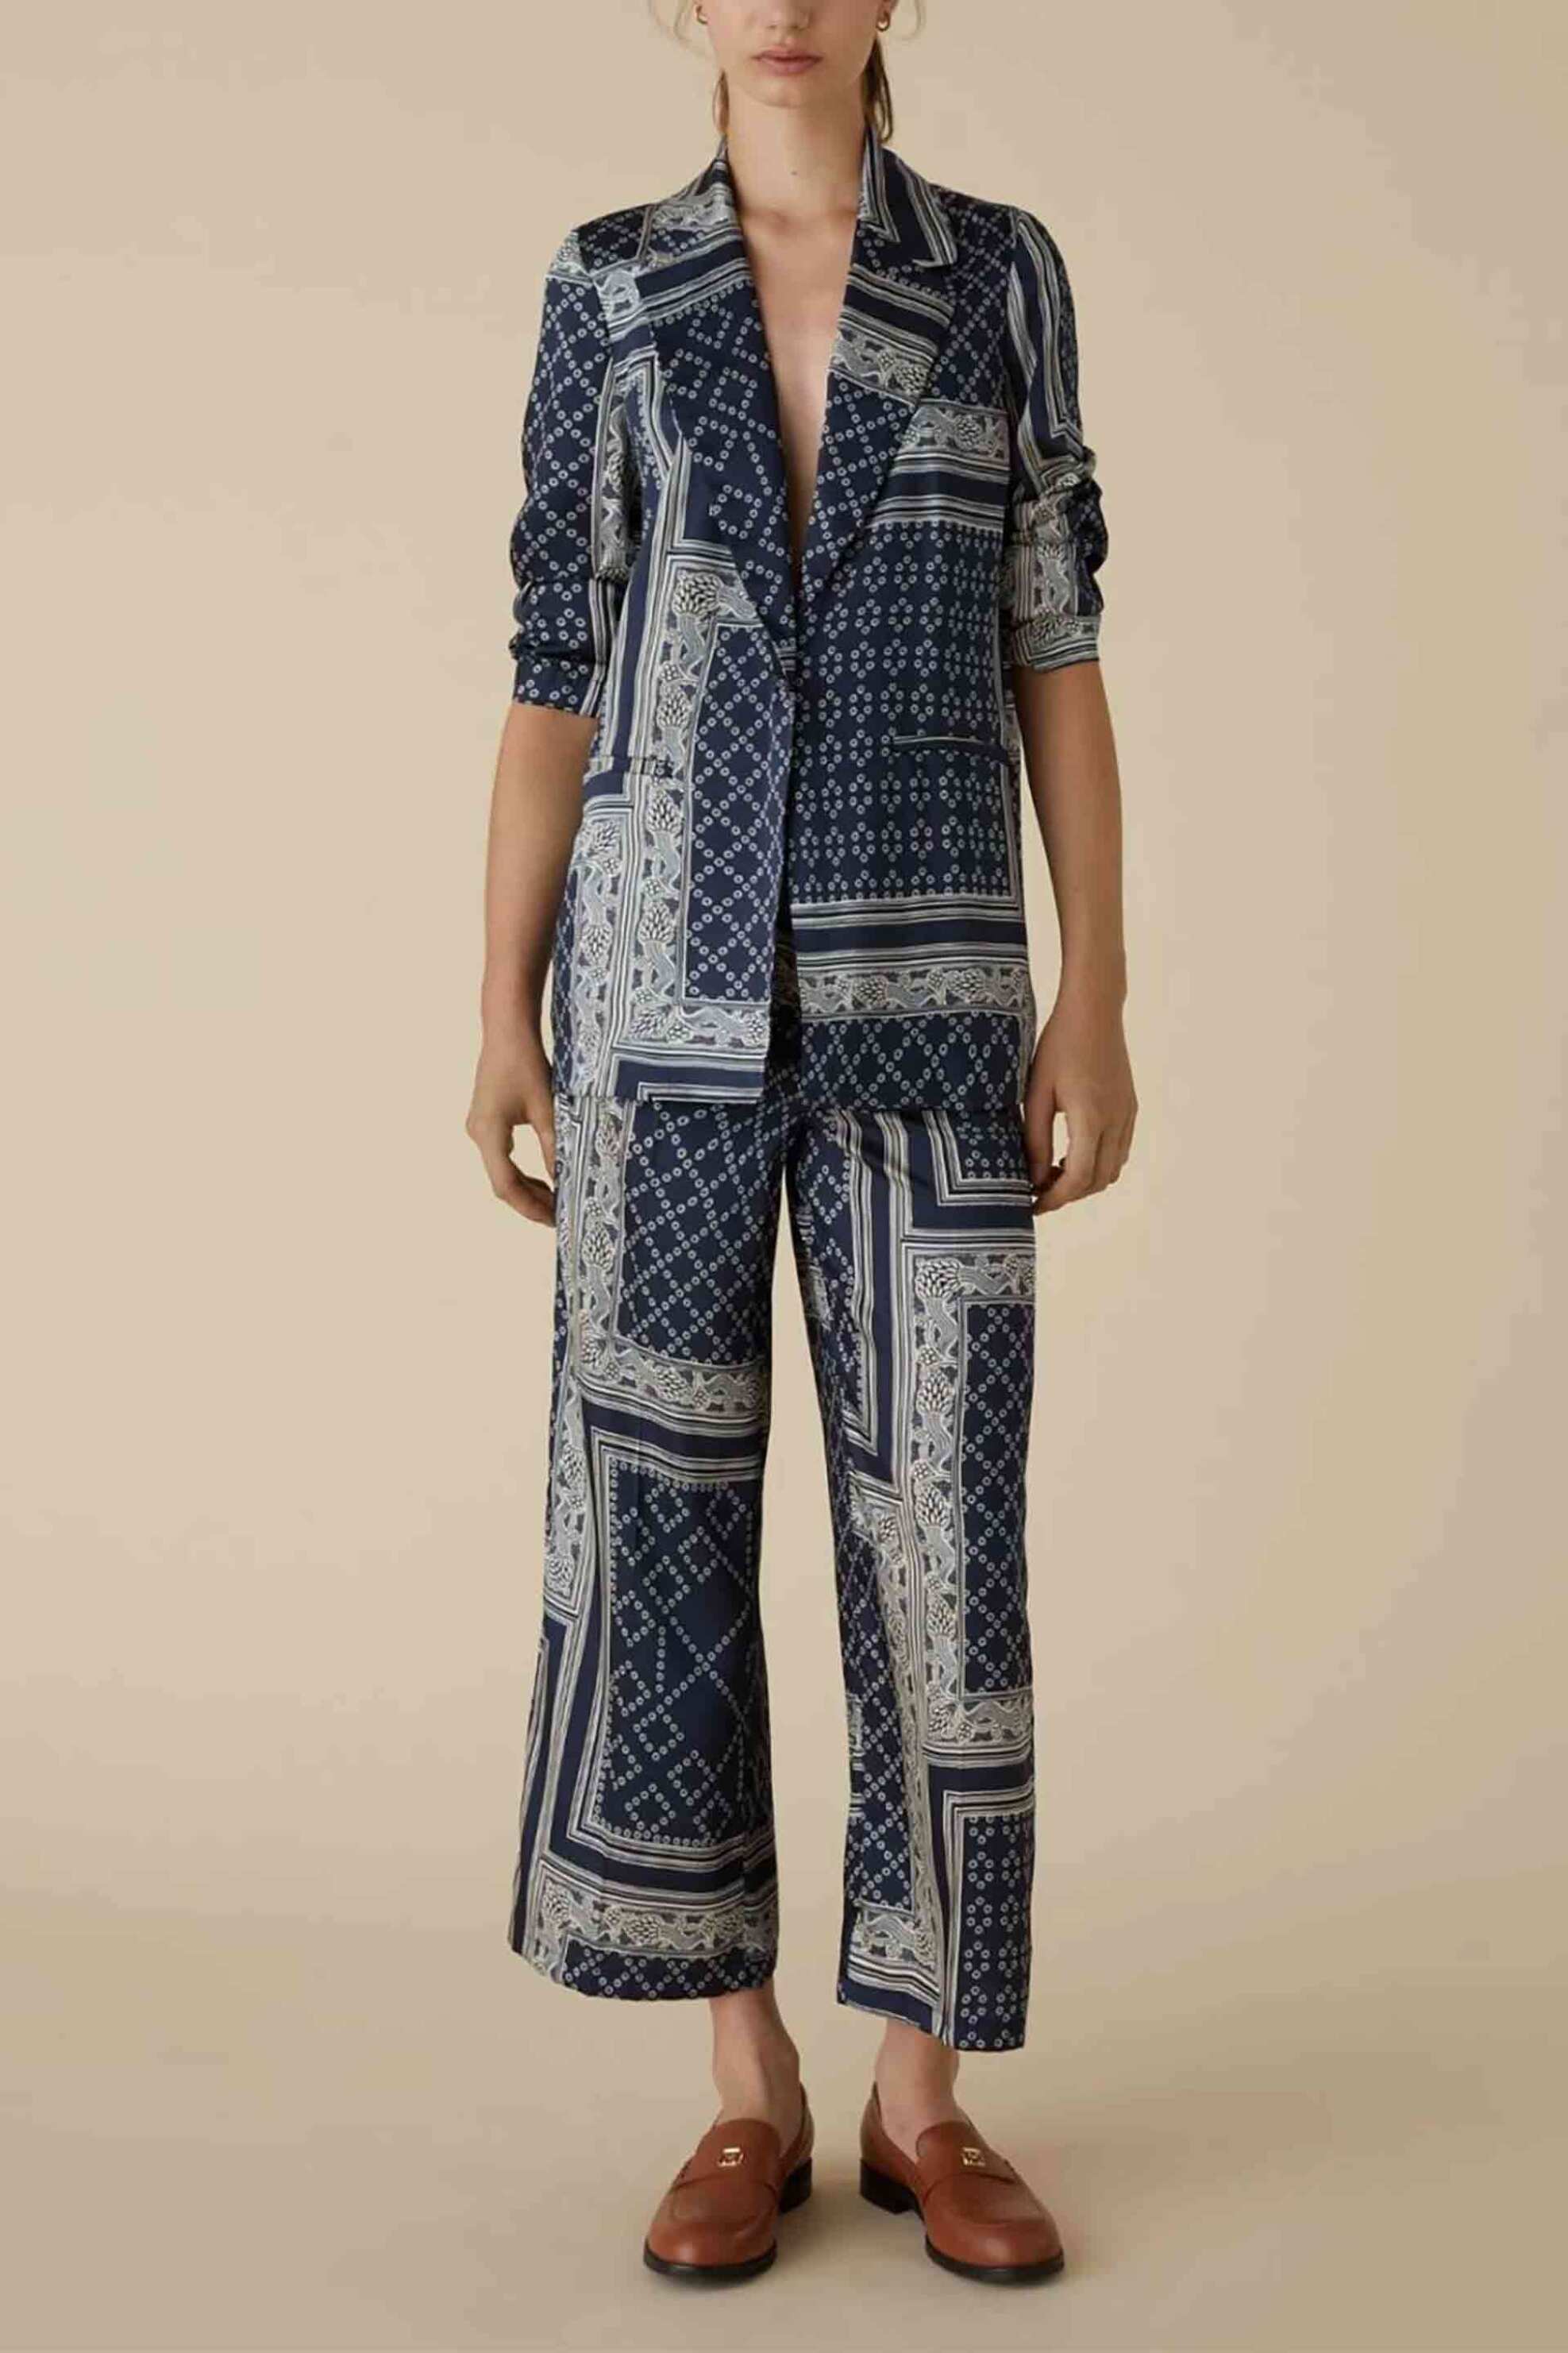 Γυναικεία Ρούχα & Αξεσουάρ > Γυναικεία Ρούχα > Γυναικεία Πανωφόρια > Γυναικεία Σακάκια Emme by Marella γυναικείο σακάκι με all-over scarf-print patterns και τσέπες - 2415041131 Μπλε Σκούρο